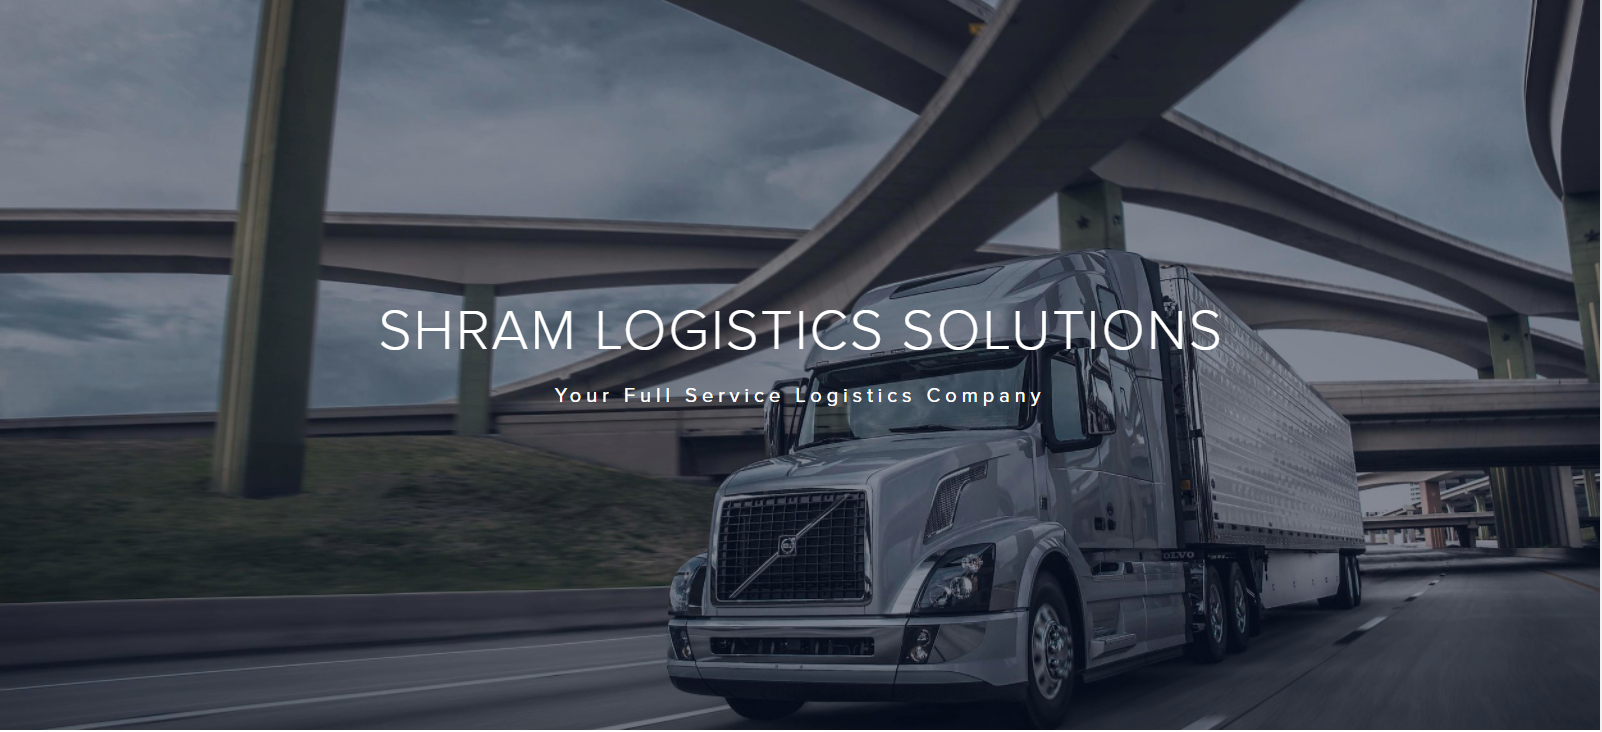 Shram Logistics Solutions